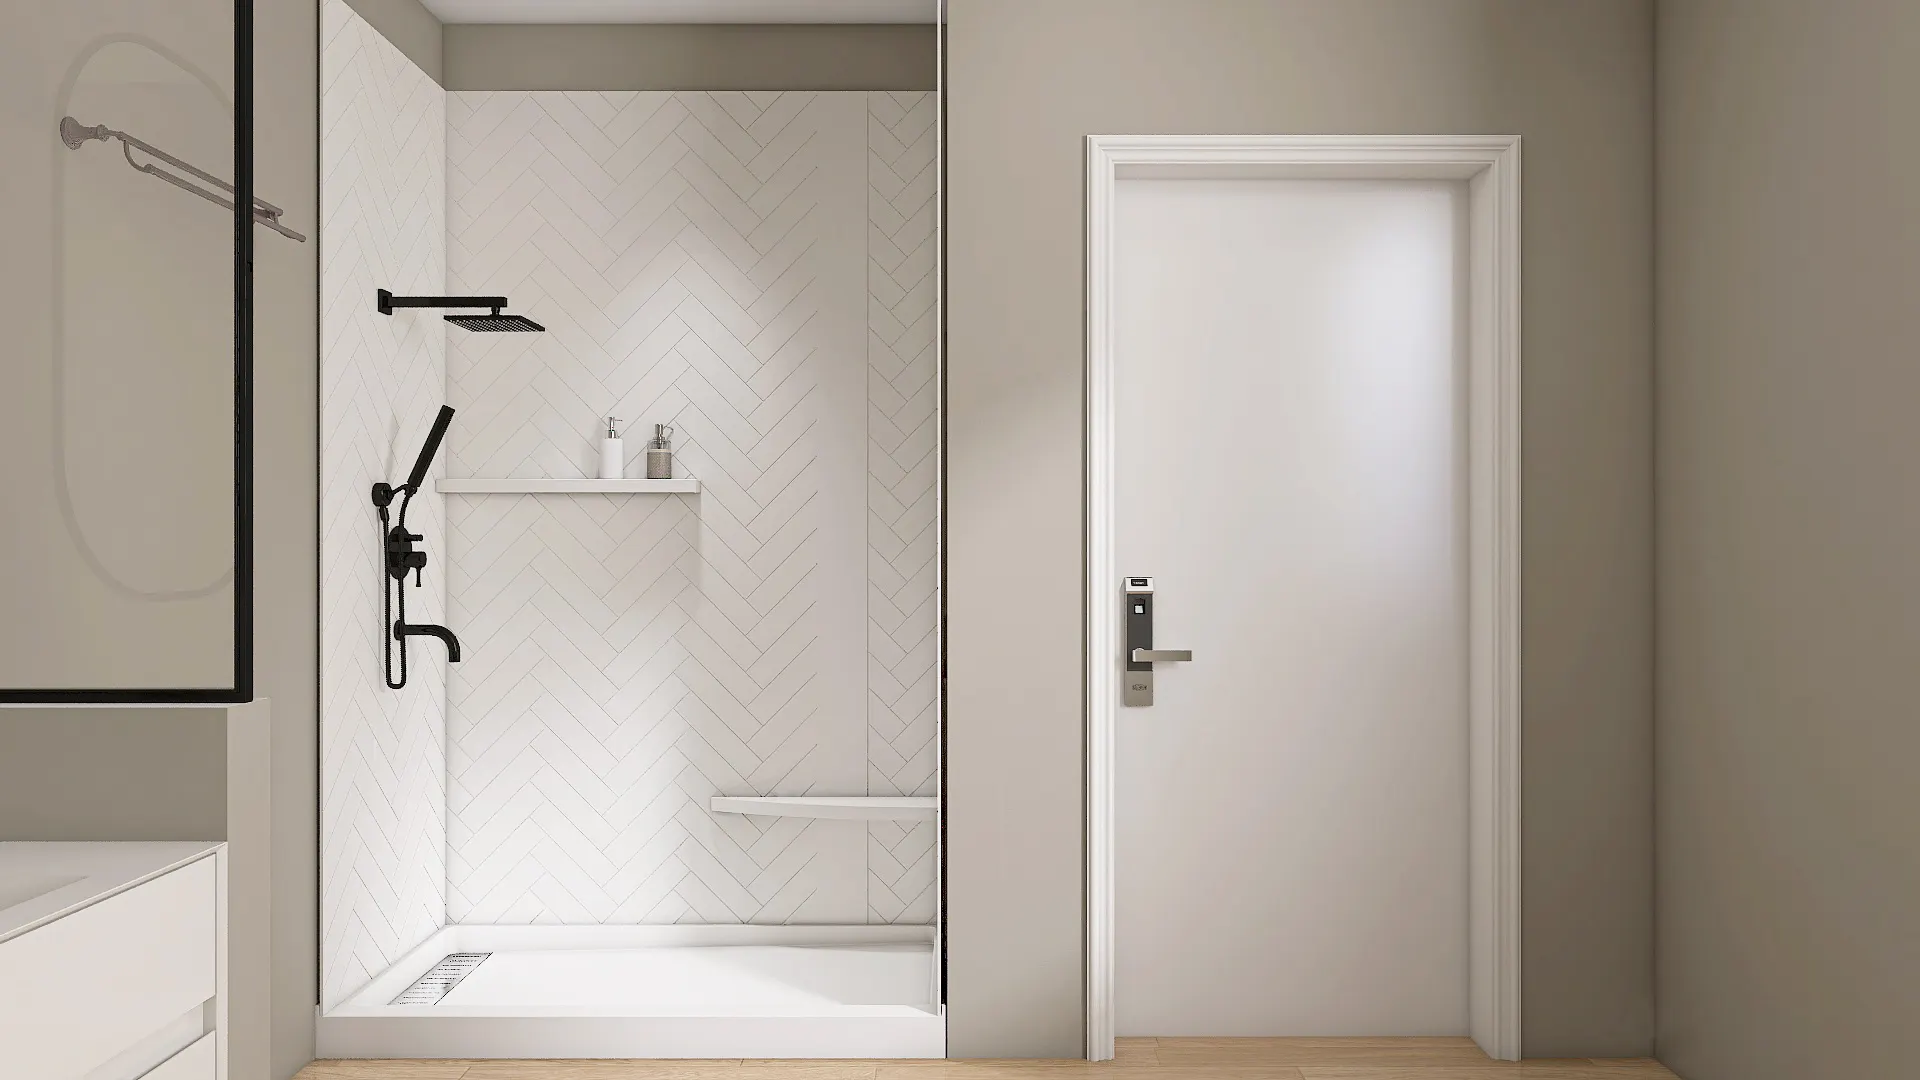 Wiselink – panneaux muraux de douche pour salle de bain, produit de douche en marbre de culture, panneau de douche surround